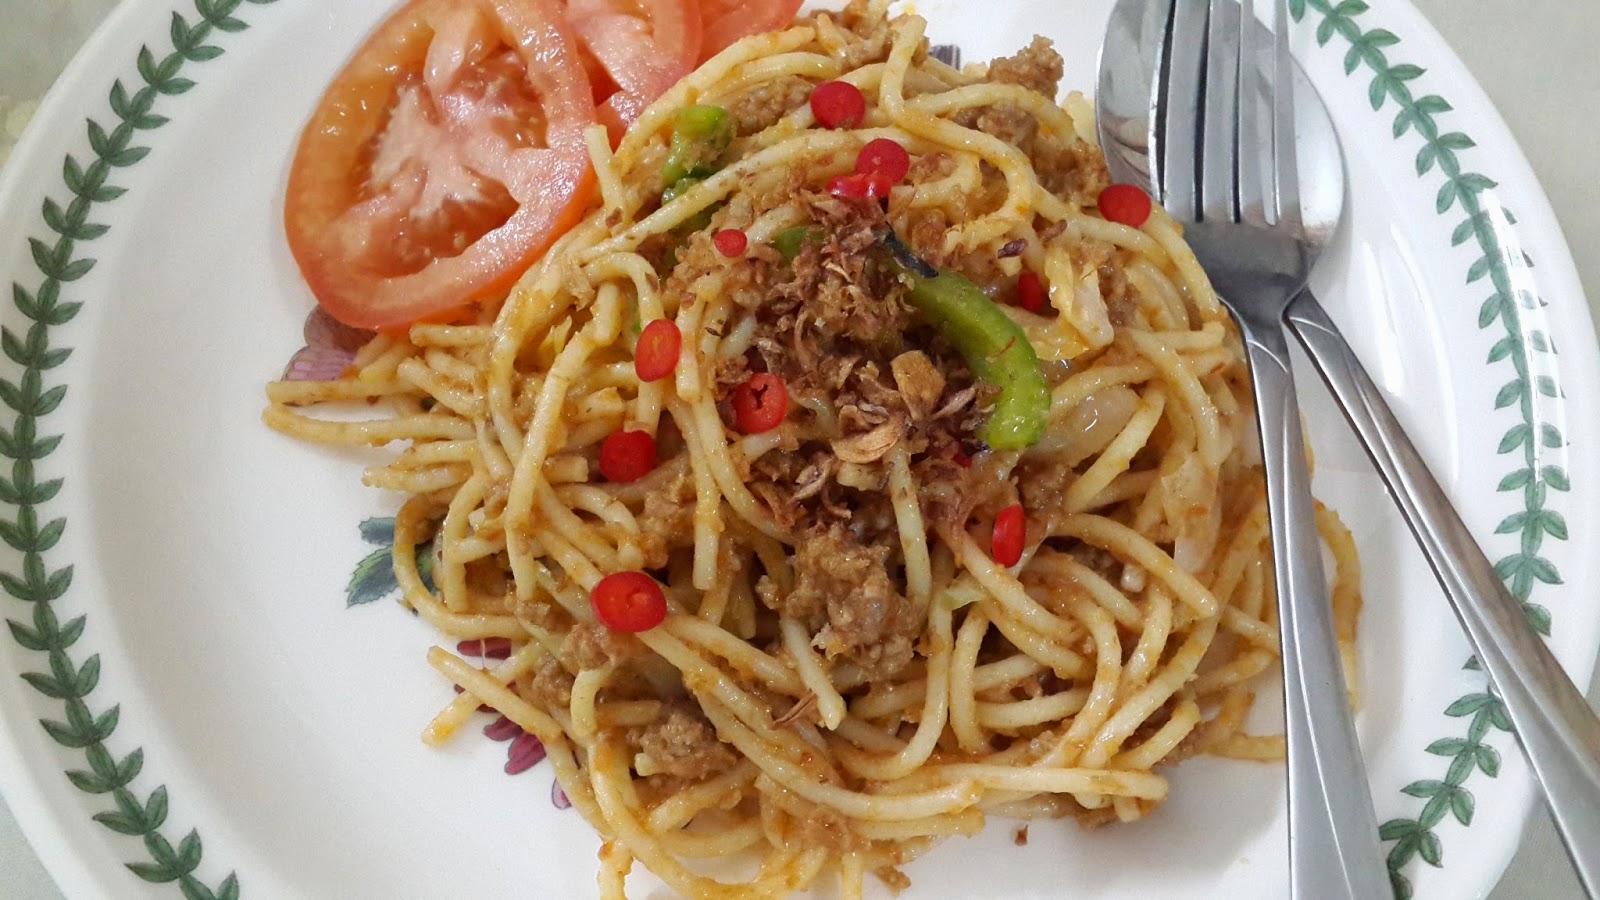 Resepi Masakan Kegemaran: Spaghetti Goreng